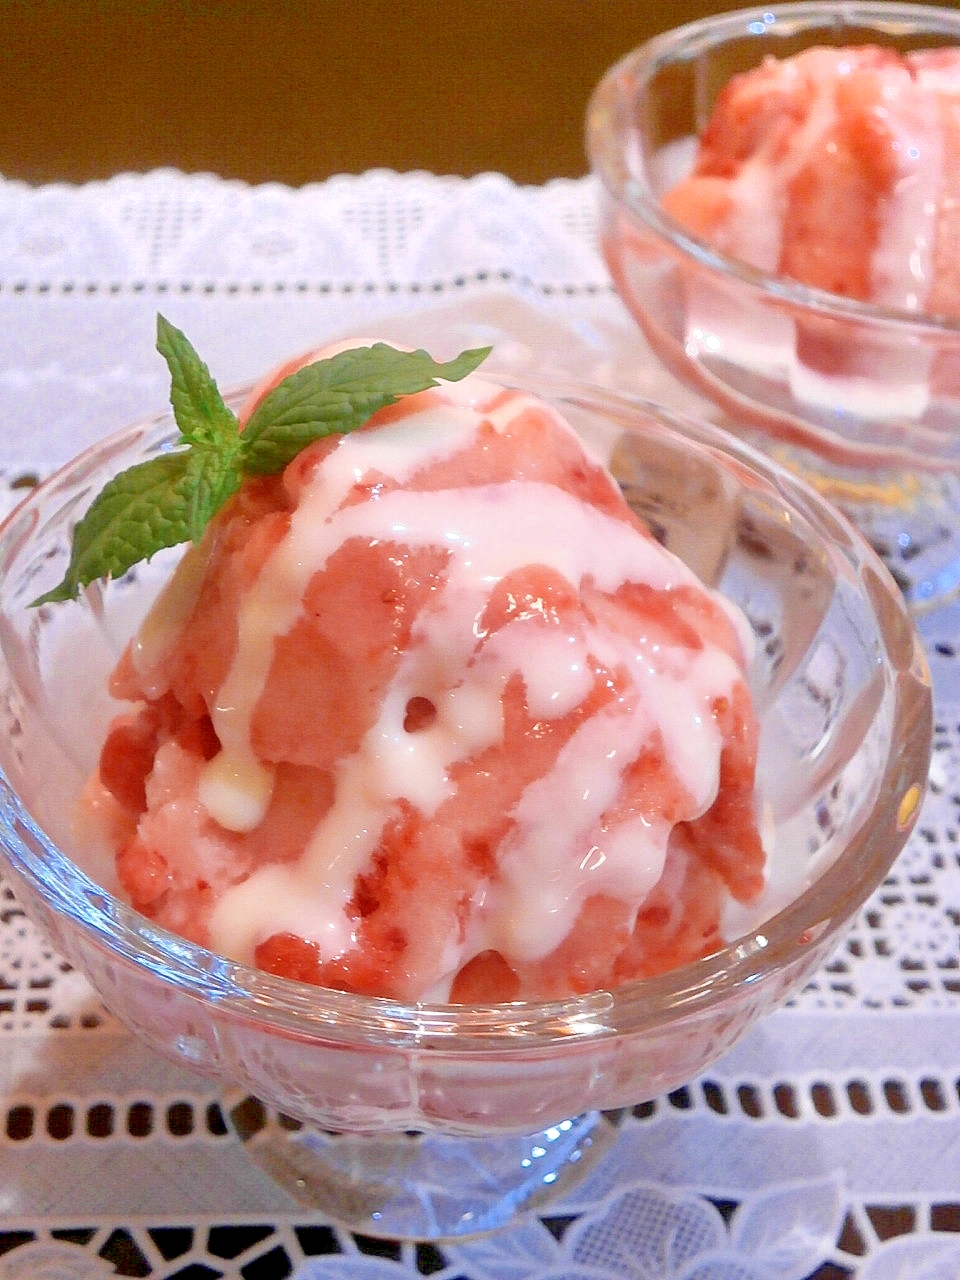 冷凍フルーツだけで作るアイス!? 新食感スイーツ「ヨナナス」のレシピ10選